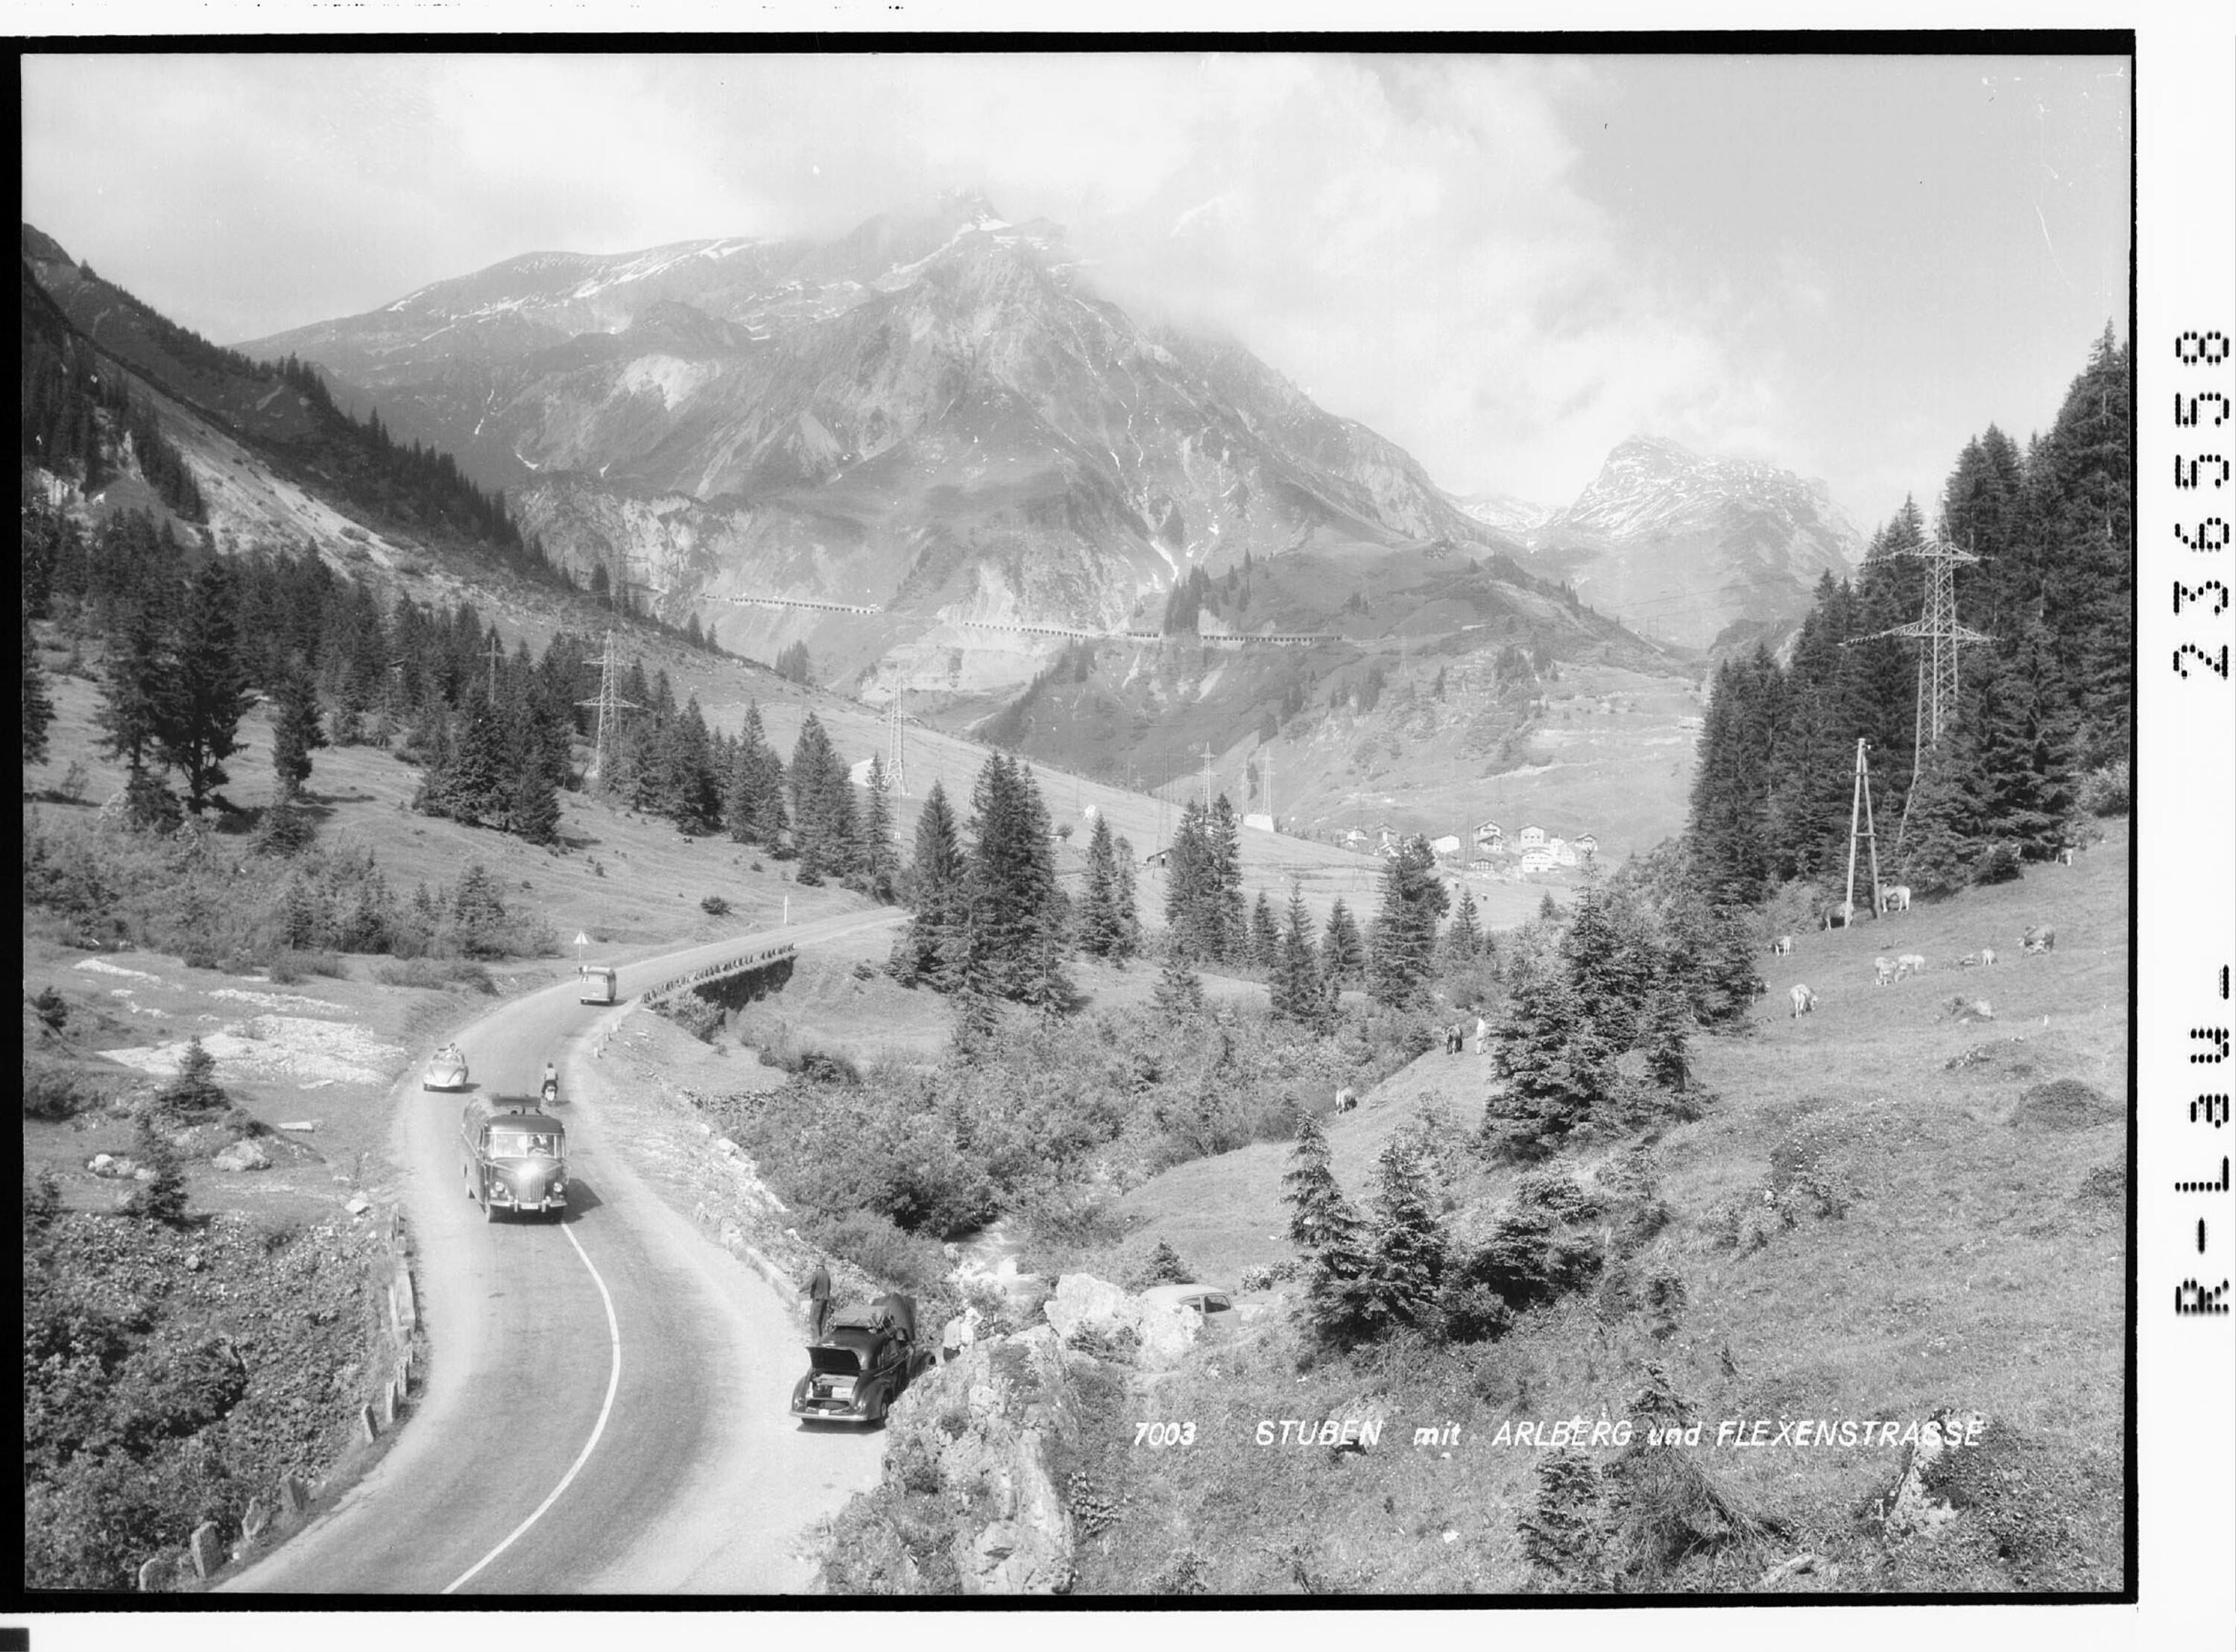 Stuben mit Arlberg und Flexenstrasse></div>


    <hr>
    <div class=